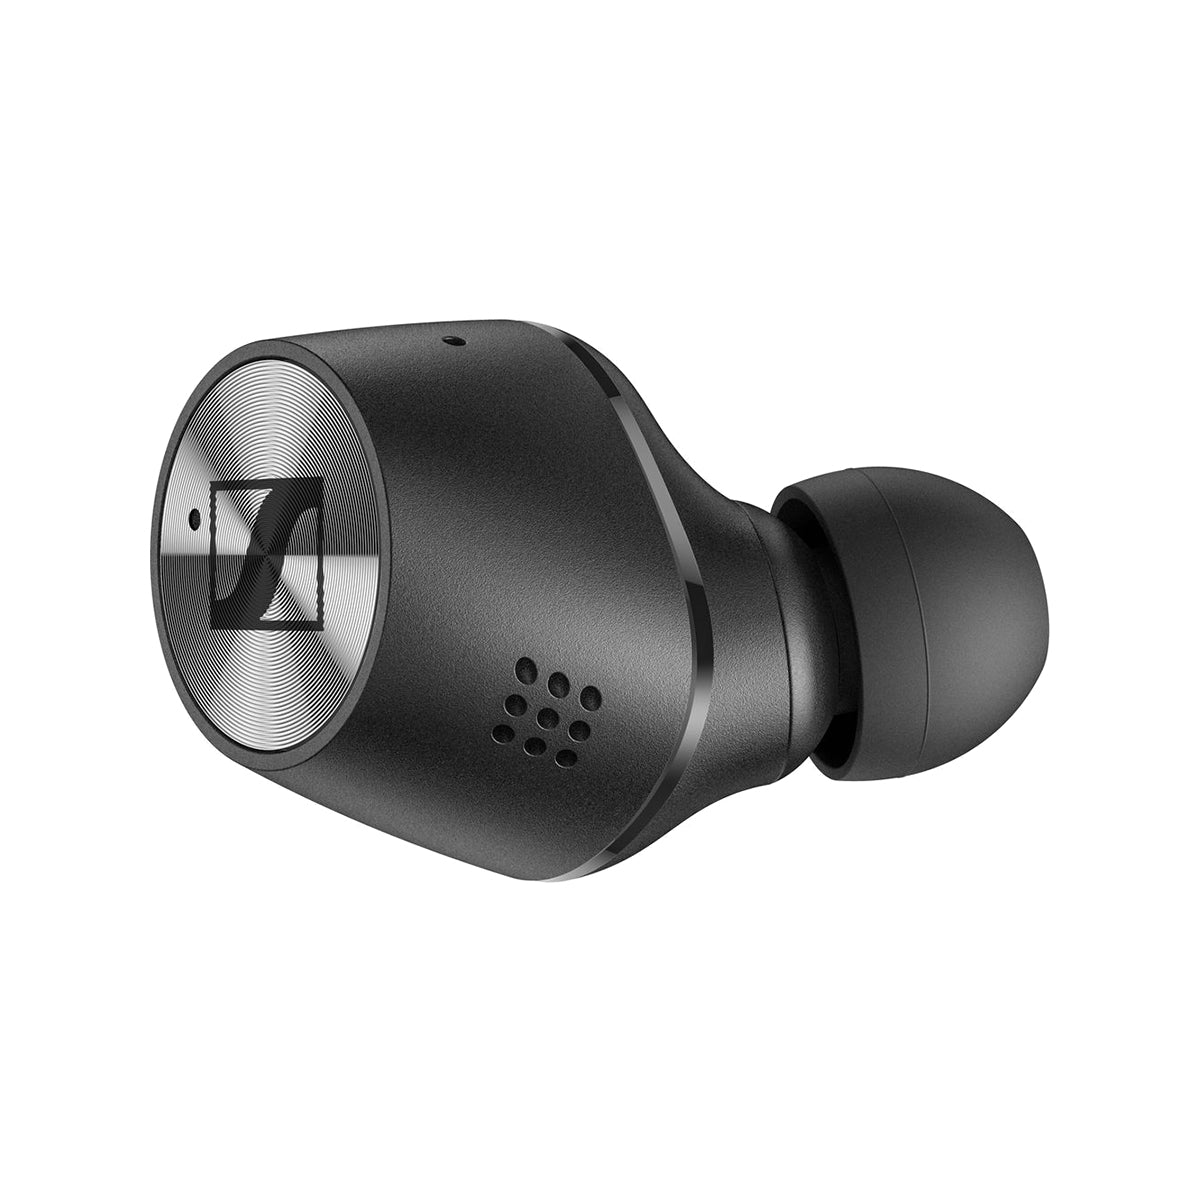 Sennheiser Momentum True Wireless 2 In-Ear Earbuds for Mobile Phones - Black